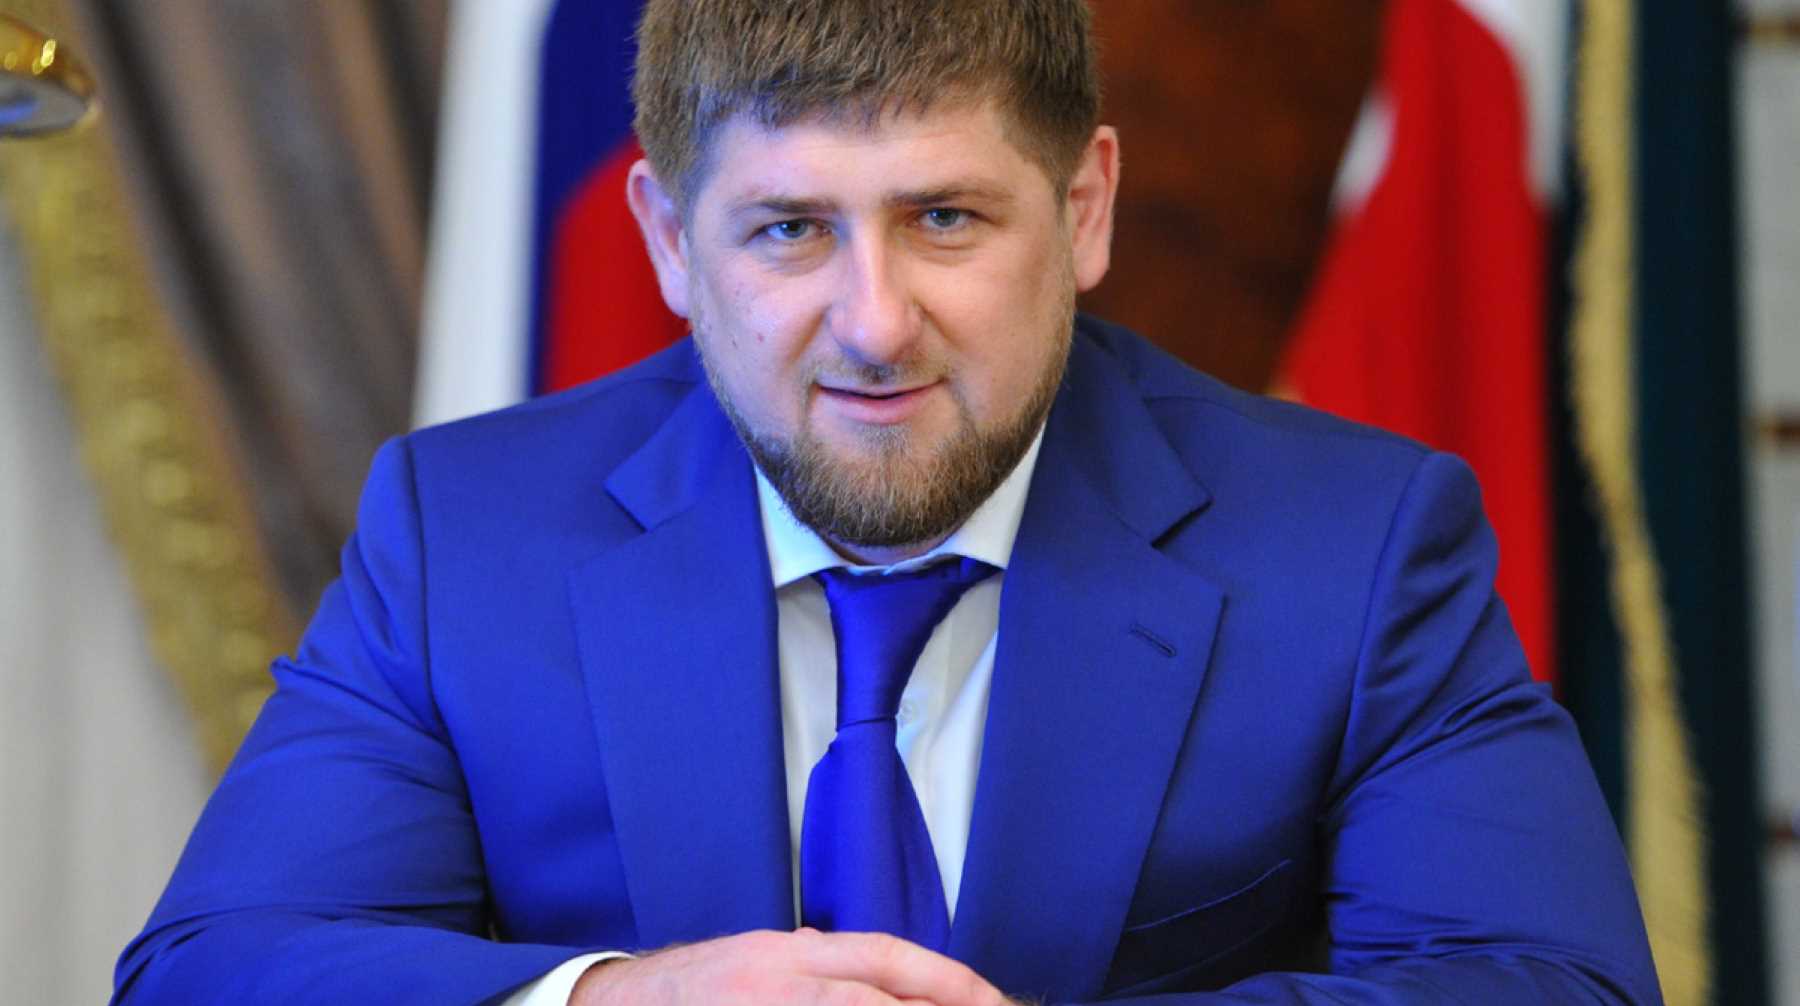 Глава Чечни предположил, что президенту США по указанию Дональда Трампа подсыпали галлюциногенные препараты Фото: © Global Look Press /  Министерство Иностранных Дел